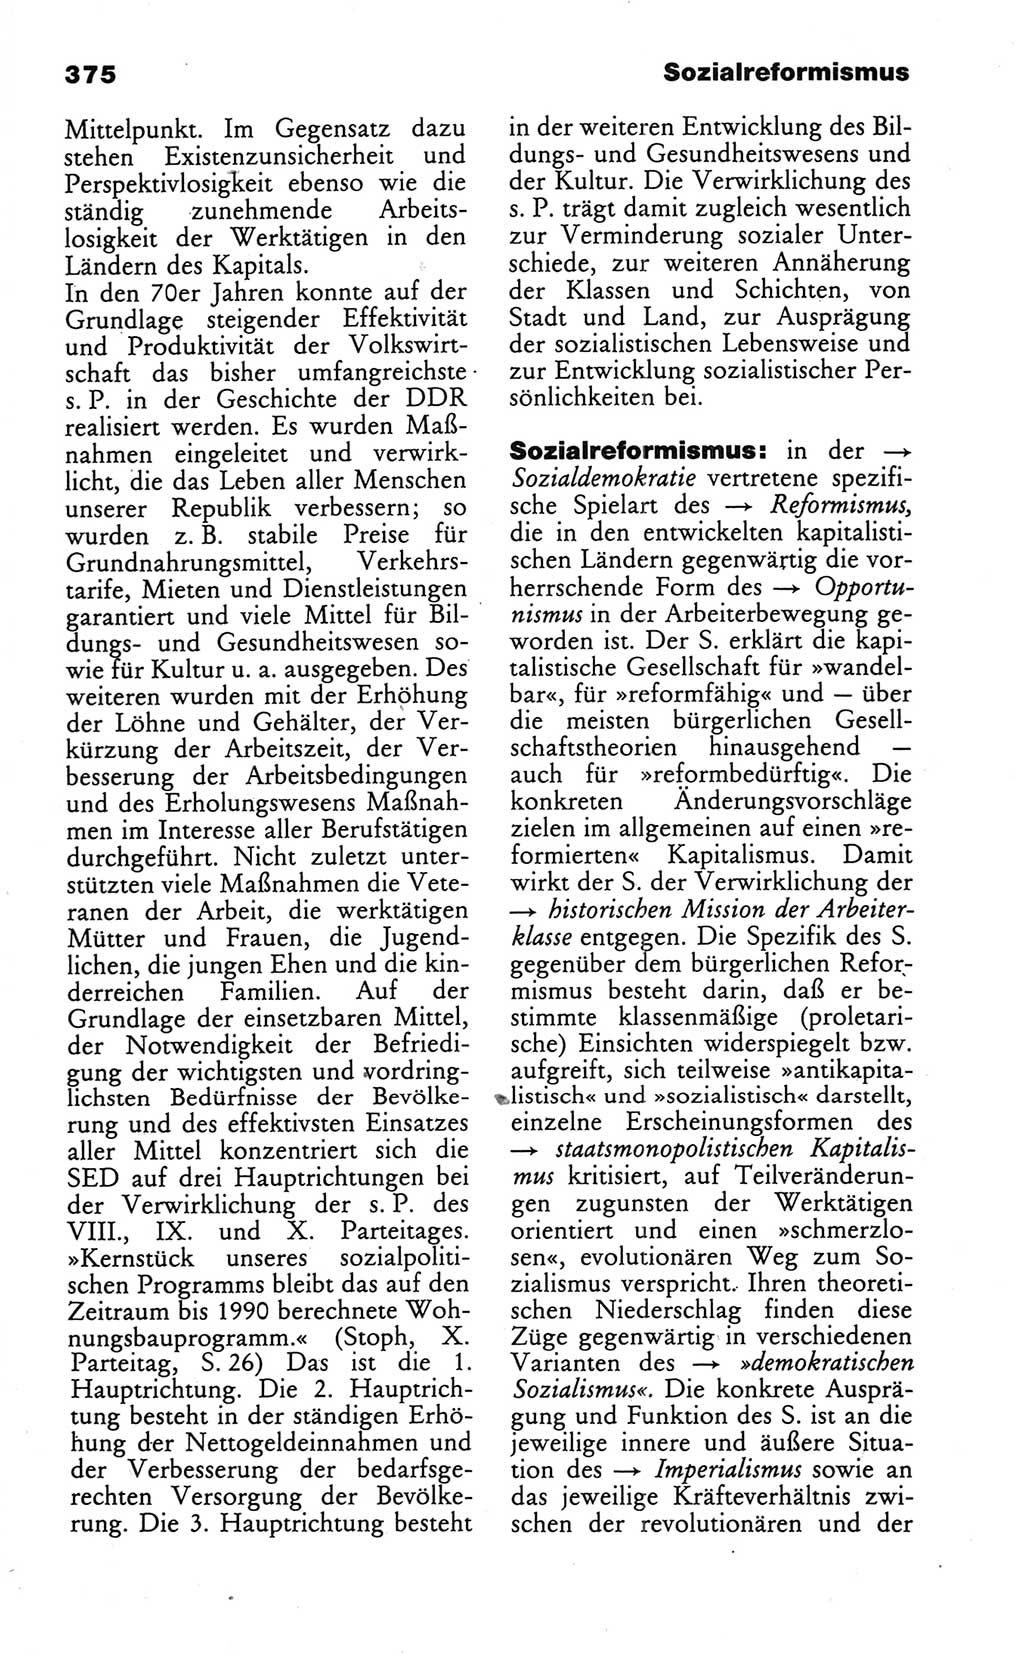 Wörterbuch des wissenschaftlichen Kommunismus [Deutsche Demokratische Republik (DDR)] 1986, Seite 375 (Wb. wiss. Komm. DDR 1986, S. 375)